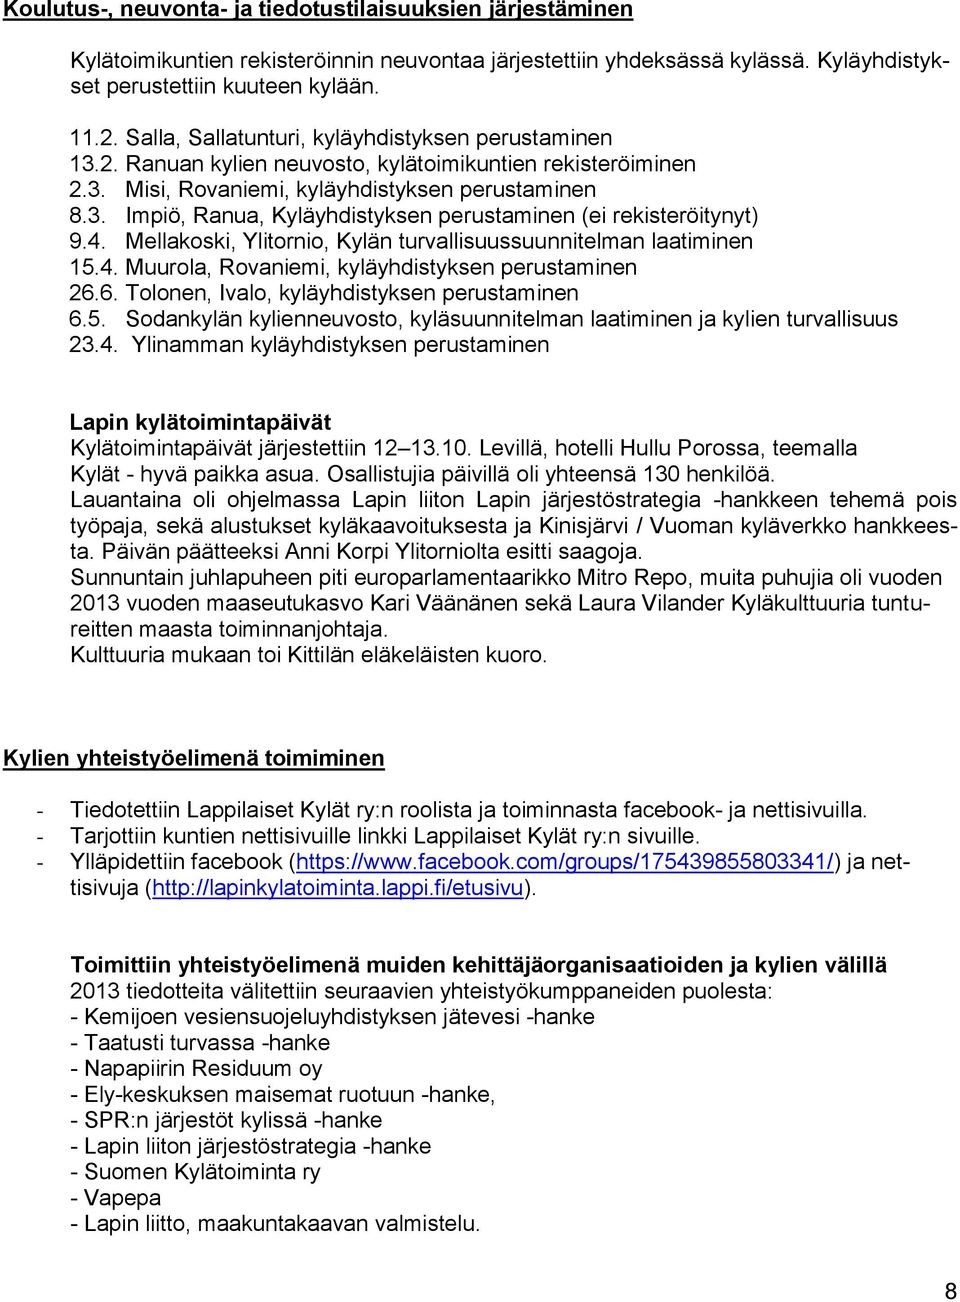 4. Mellakoski, Ylitornio, Kylän turvallisuussuunnitelman laatiminen 15.4. Muurola, Rovaniemi, kyläyhdistyksen perustaminen 26.6. Tolonen, Ivalo, kyläyhdistyksen perustaminen 6.5. Sodankylän kylienneuvosto, kyläsuunnitelman laatiminen ja kylien turvallisuus 23.